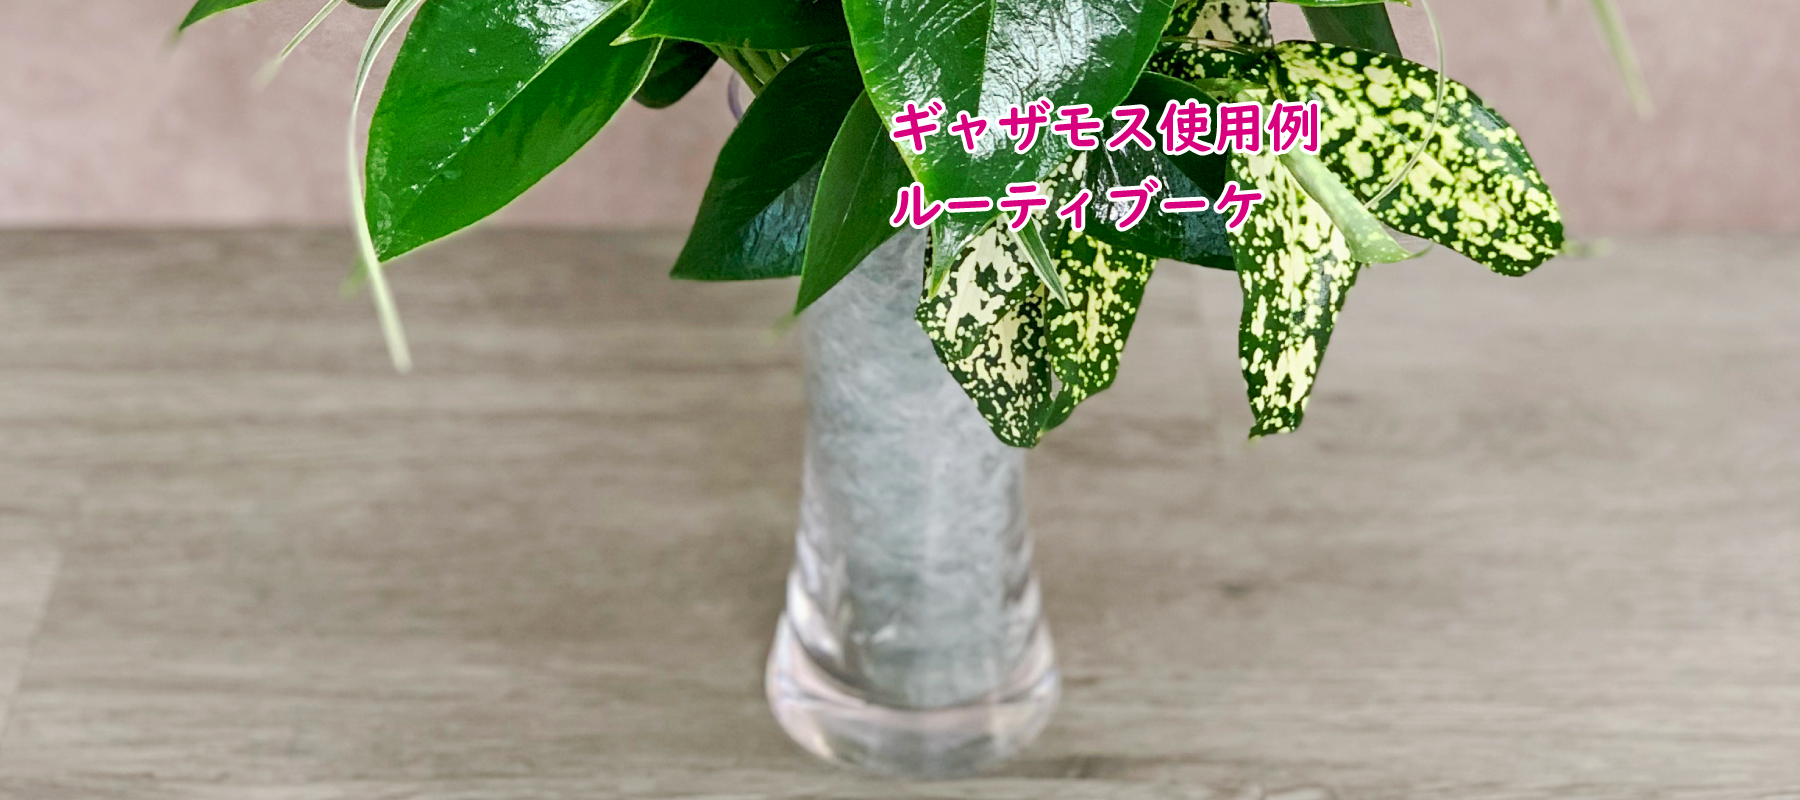 花創人(はなそうにん)オゼジュン先生のネットショップは、おしゃれな寄せ植えやプランツギャザリング専門のオンラインショップです。ガーデニングに人気の綱木紋の鉢・ギャザリング水苔(ギャザモス)・ゴージャスなラナンキュラスラックス・宿根草・観葉植物・多肉植物(多肉ちゃん）等、大人かわいい上品な花苗は、インスタ映えして推し。オーダーメイドのギャザリングは、開店祝い・歓送迎会・退職祝い・クリスマス・ハロウィン・母の日・結婚式・引っ越し新築祝い等のギフトやプレゼントにも人気でおすすめ。通販サイトなら尾関純子の花屋さん 花創人 豪華でかわいい人気フラワーのプランツギャザリング(ギャザ植え・寄せ植えスタイル)で癒しのひとときを。